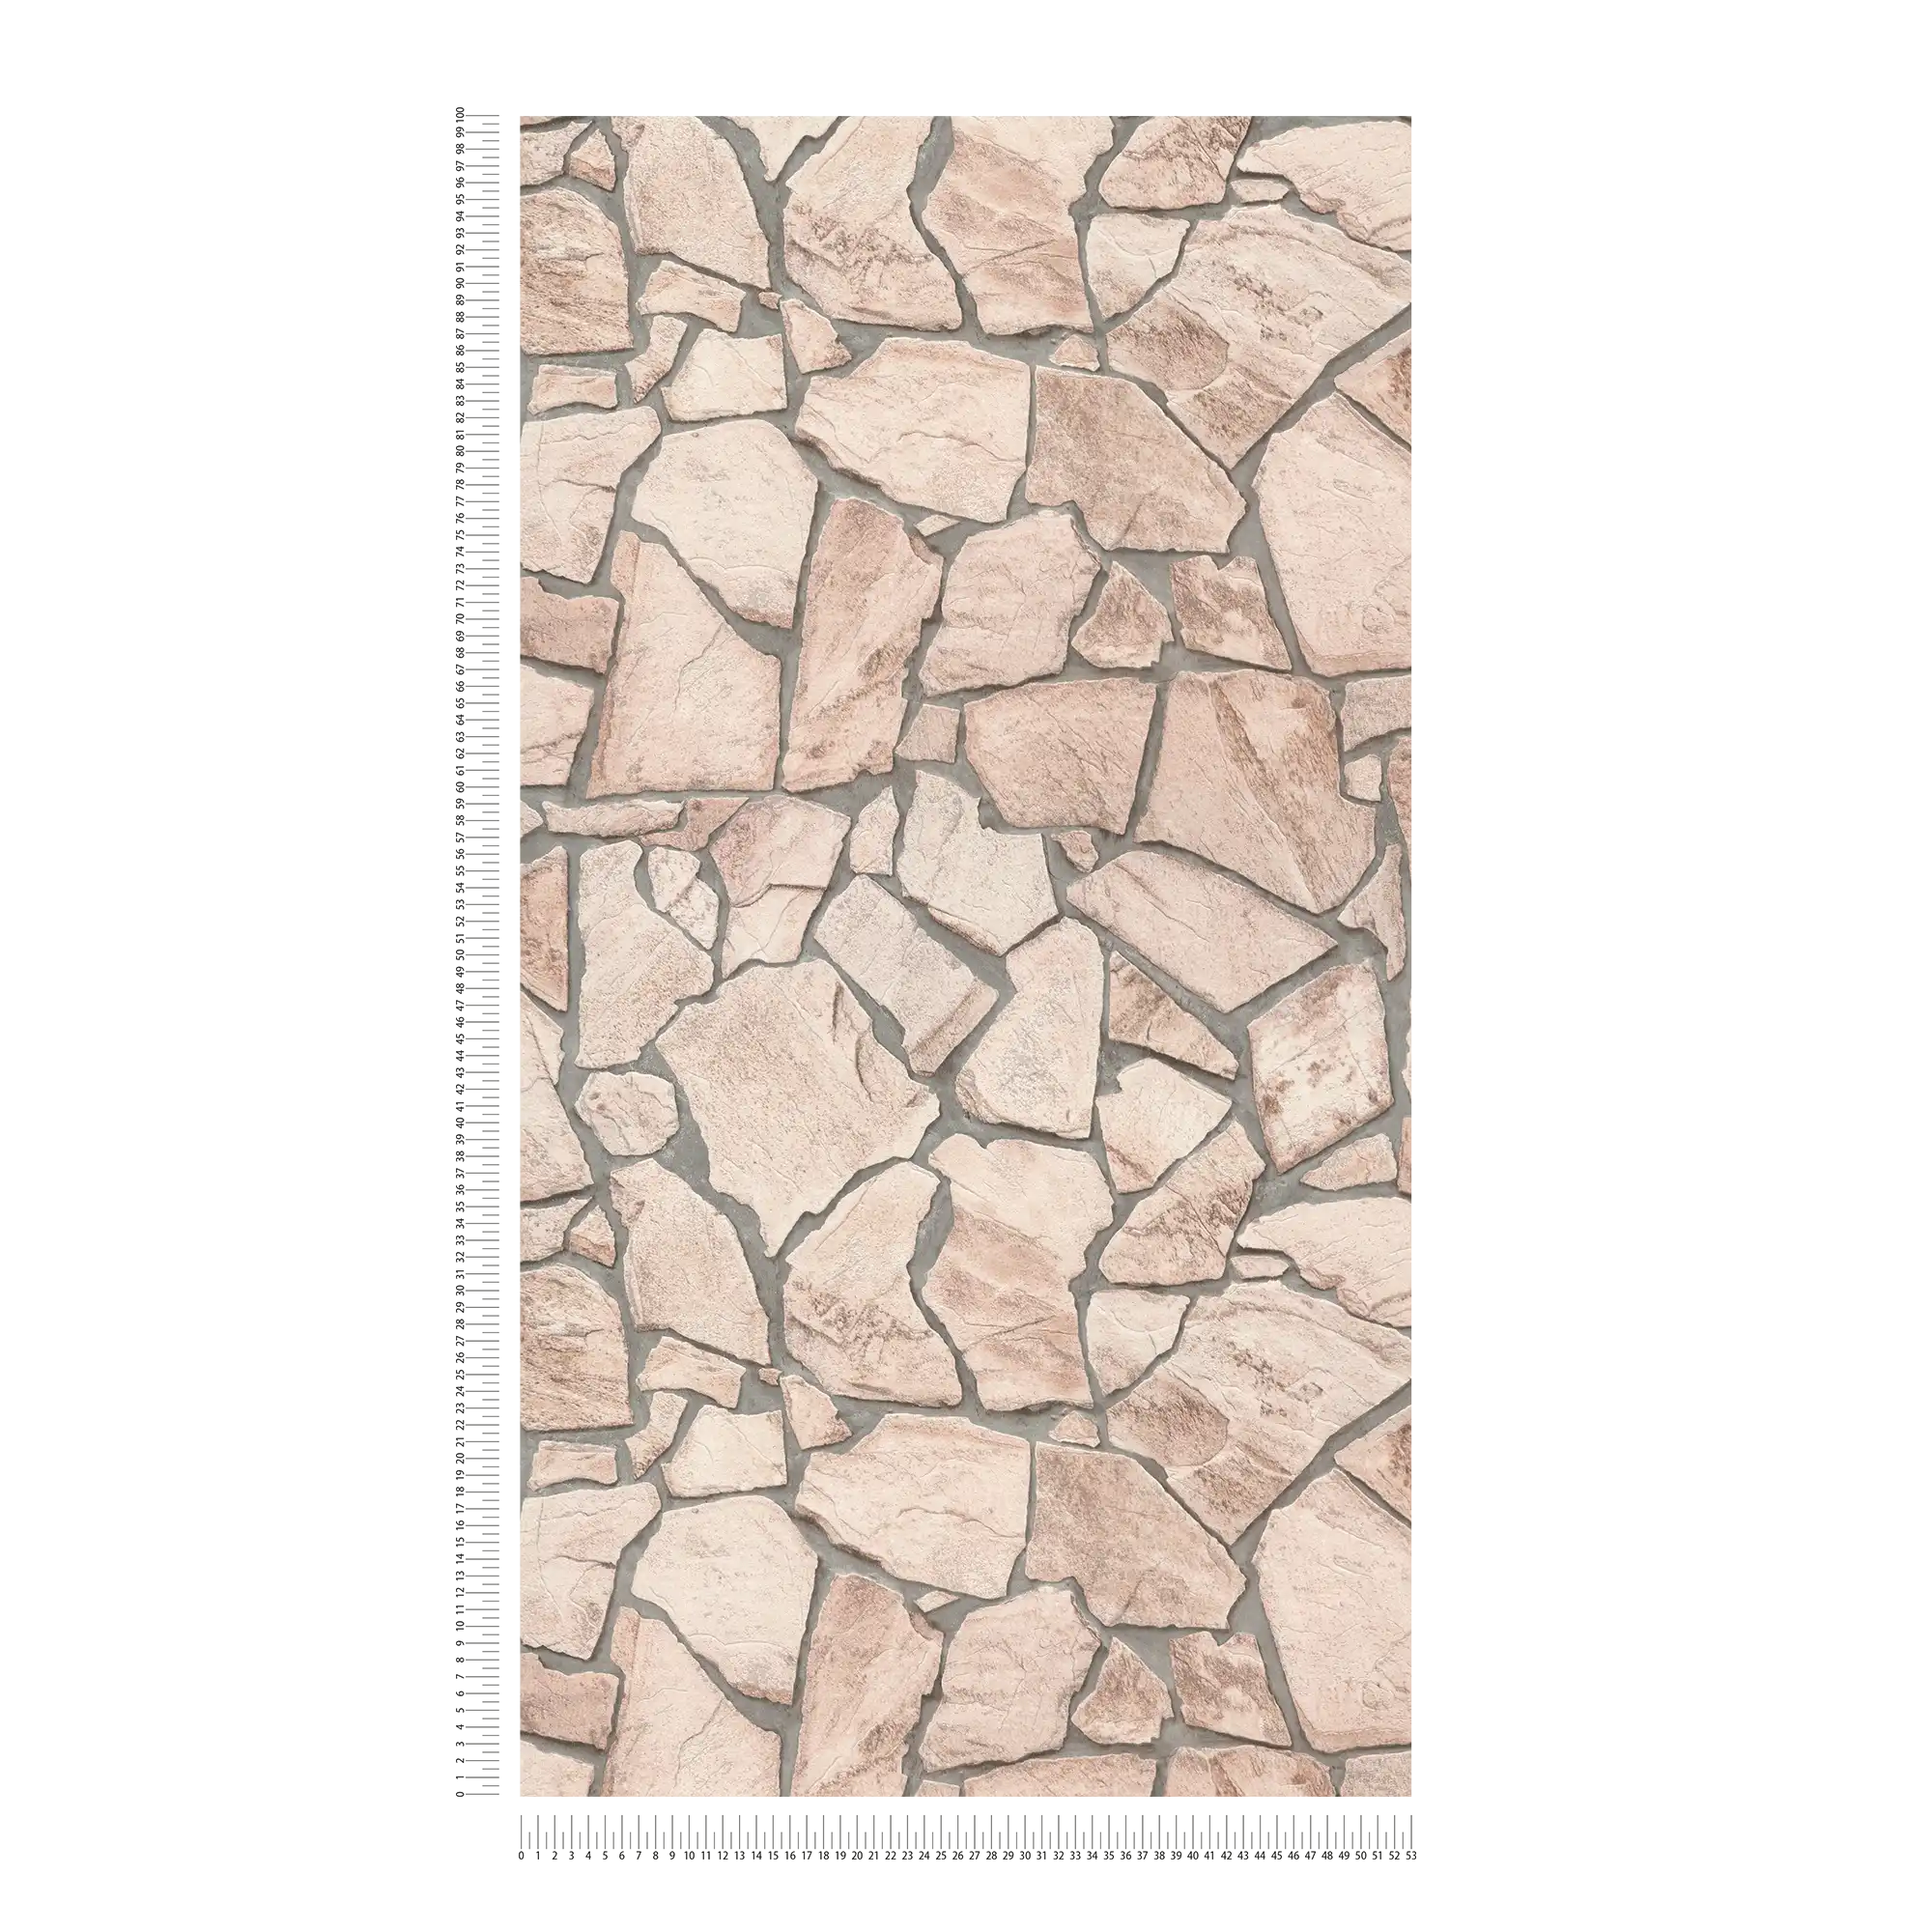             Carta da parati effetto pietra 3D, motivo realistico in pietra naturale - beige, grigio, marrone
        